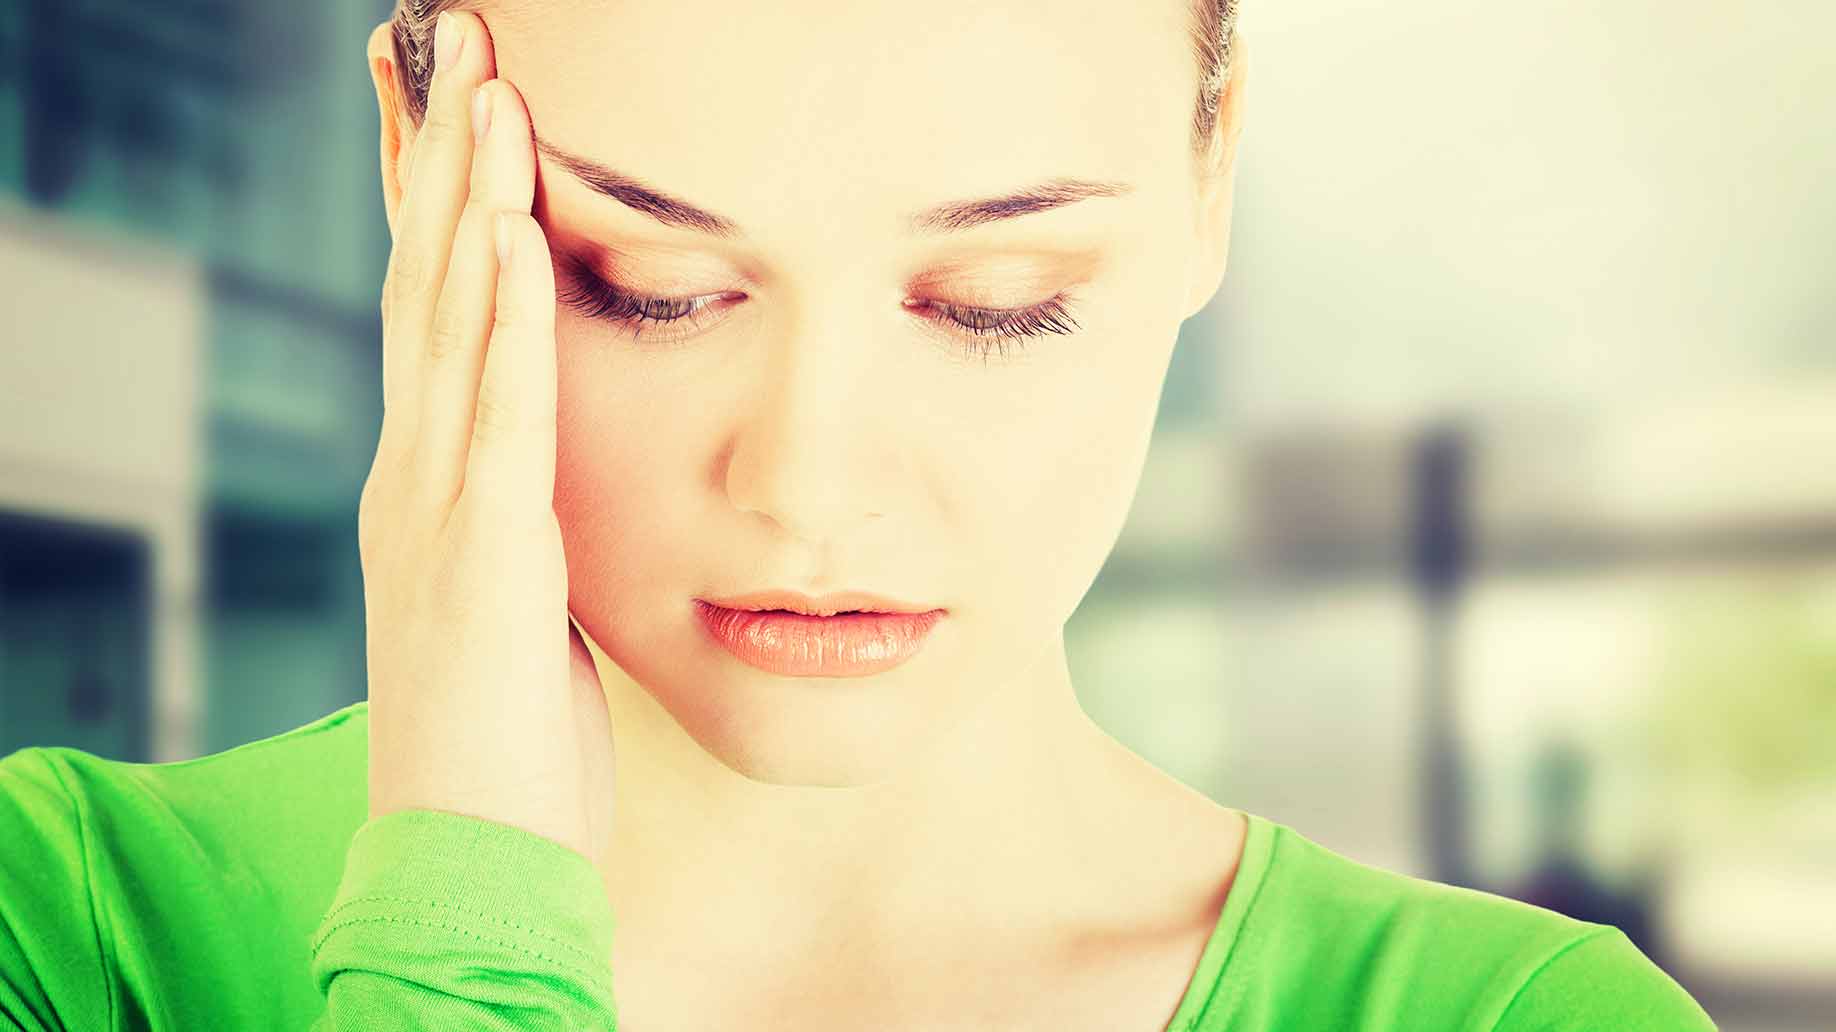 anxiety disorder stress headache pain